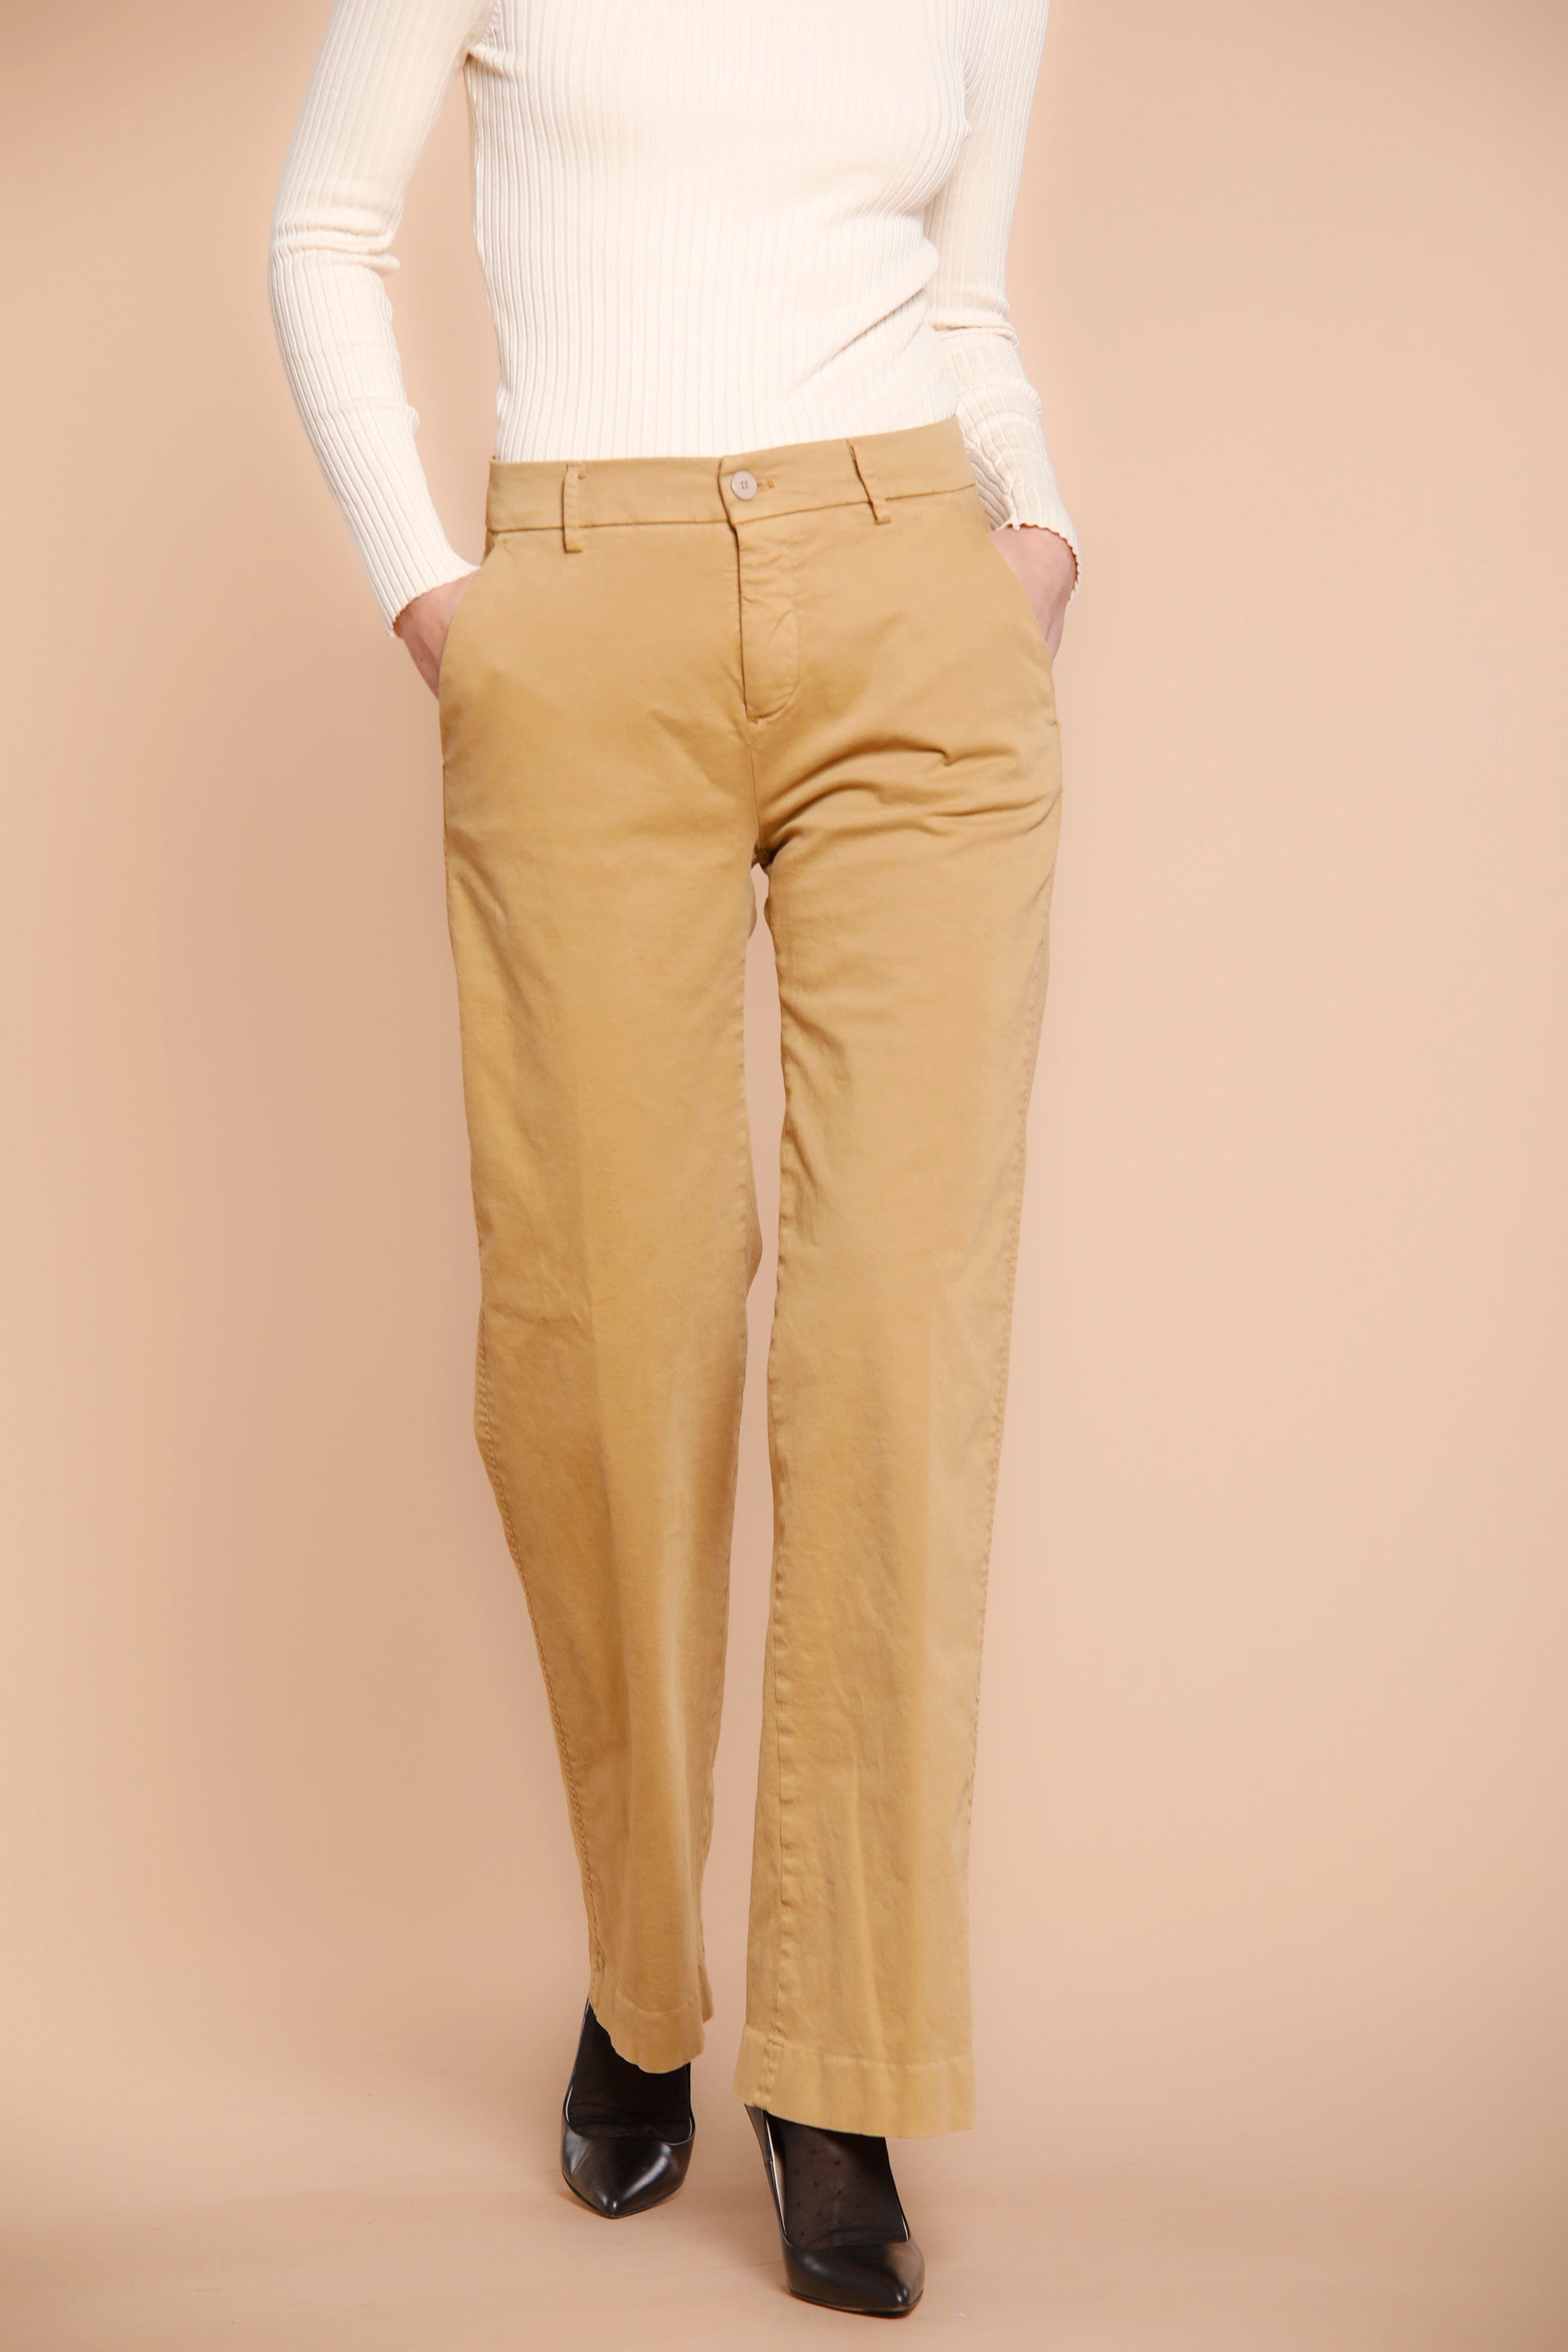 Image 1 du pantalon chino femme en satin couleur charpentier modèle New York Straight par Maosn's